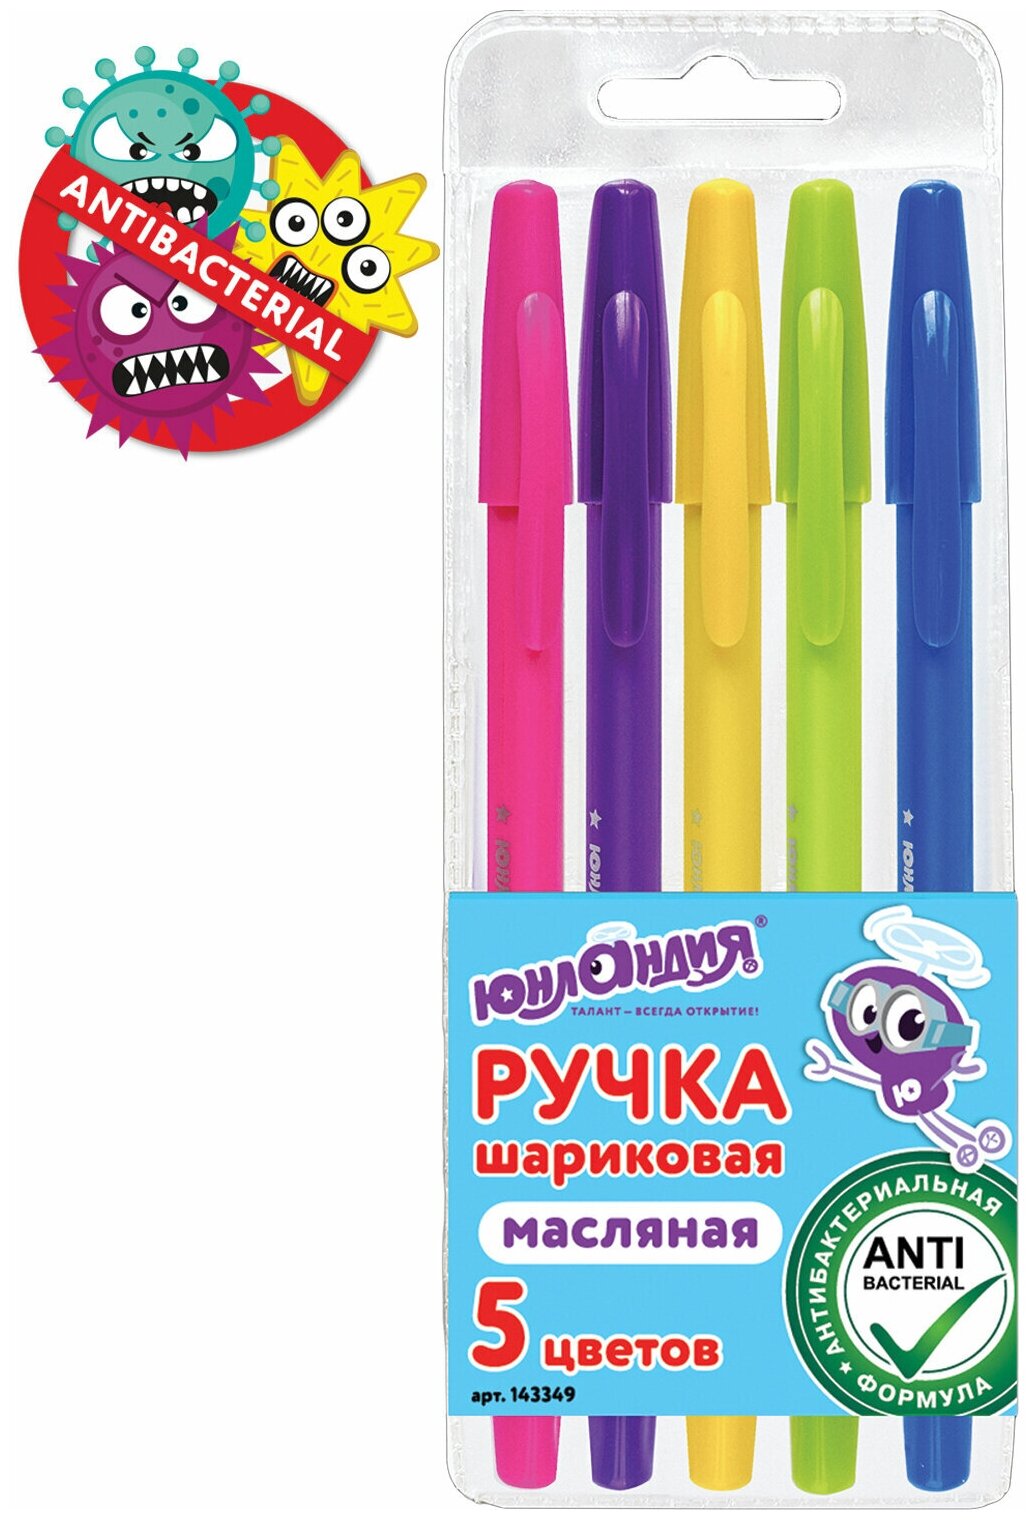 Ручки шариковые масляные, набор 5 шт, 5 цветов